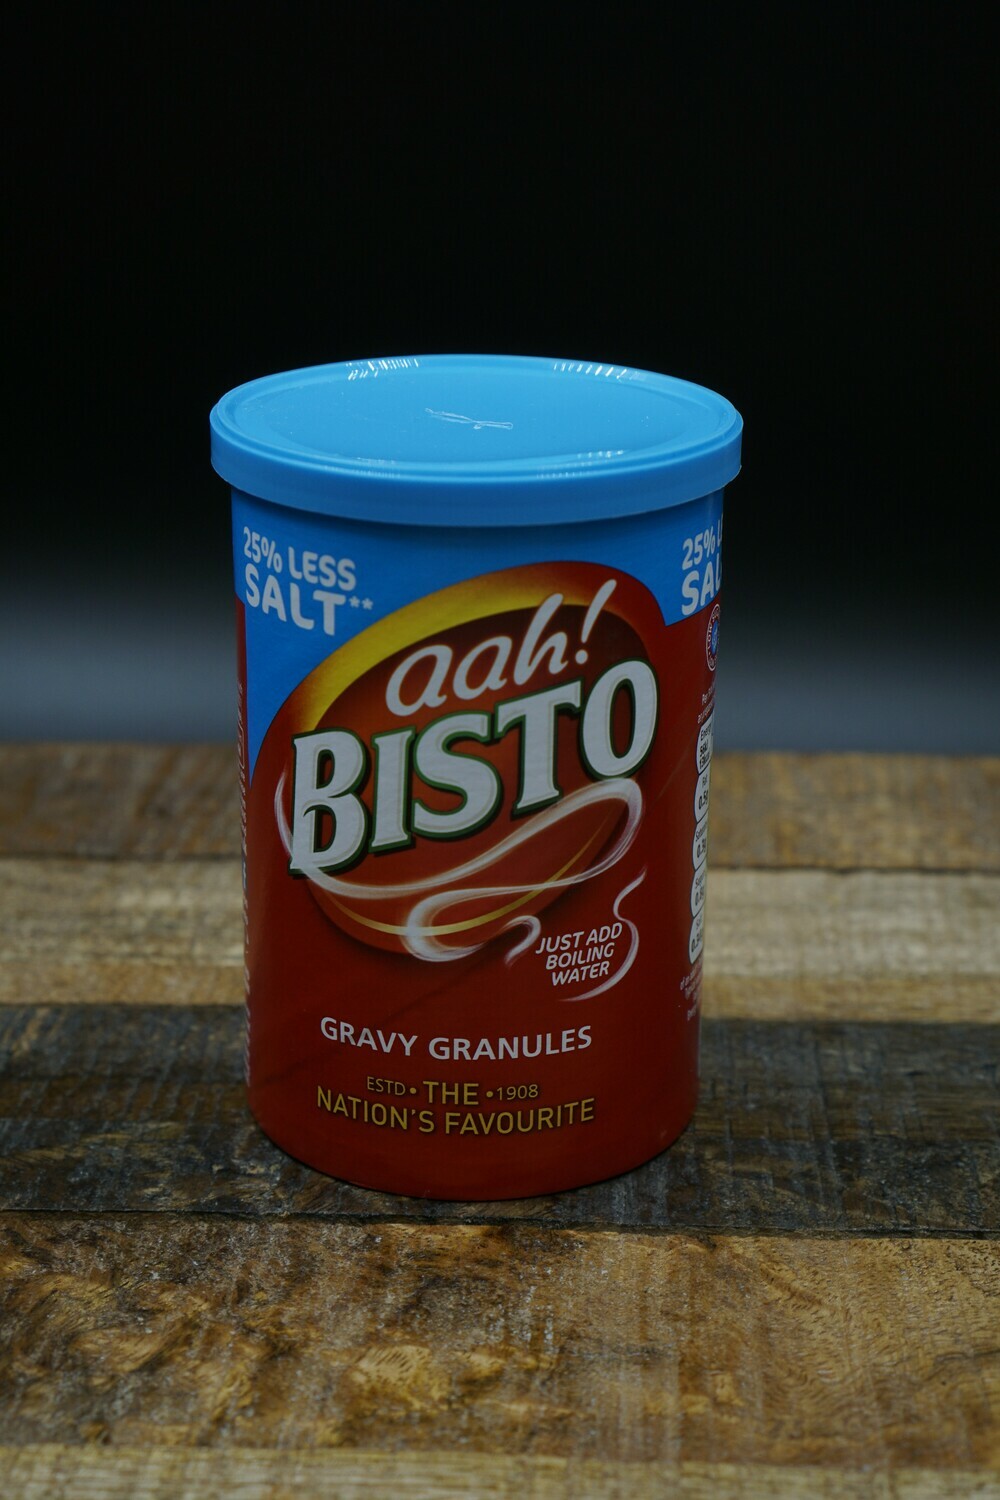 Bisto 25% Less Salt Gravy Granules 170g